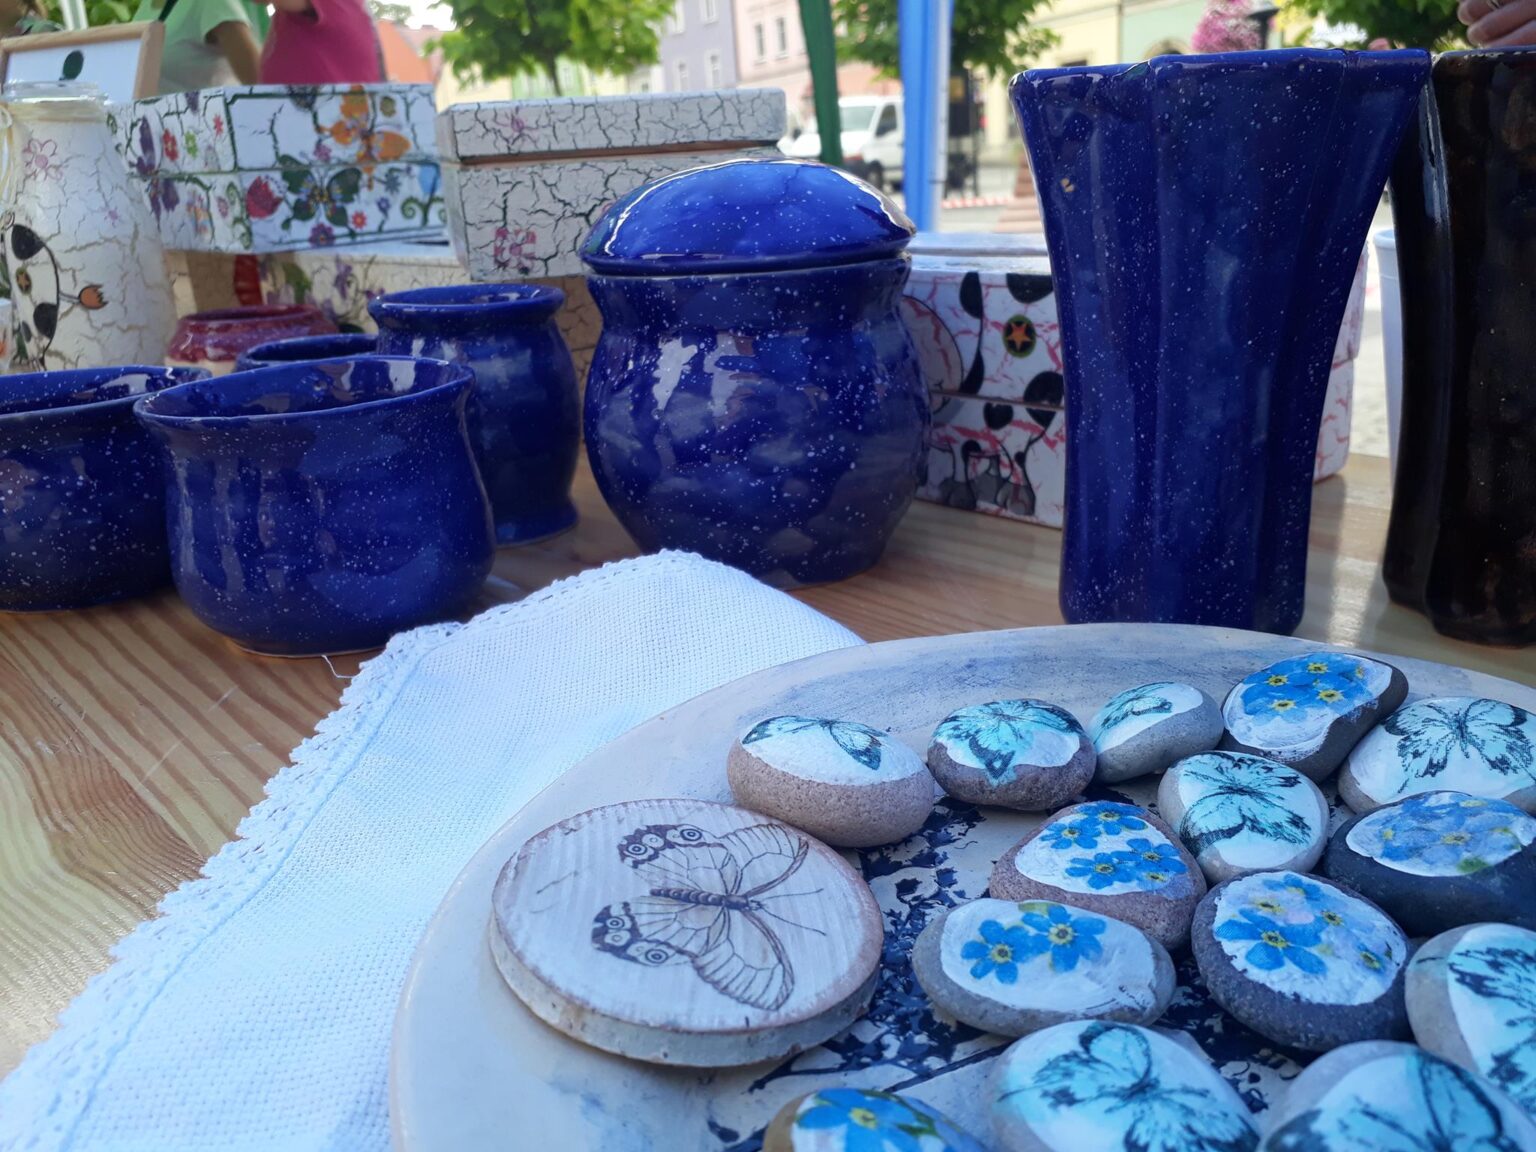 Stoisko plenerowe na którym pokazane są wyroby ceramiczne: niebieskie ceramiczne wazony, donice, kamienie ozdobione technika decoupage w motyle i niezapominajki.